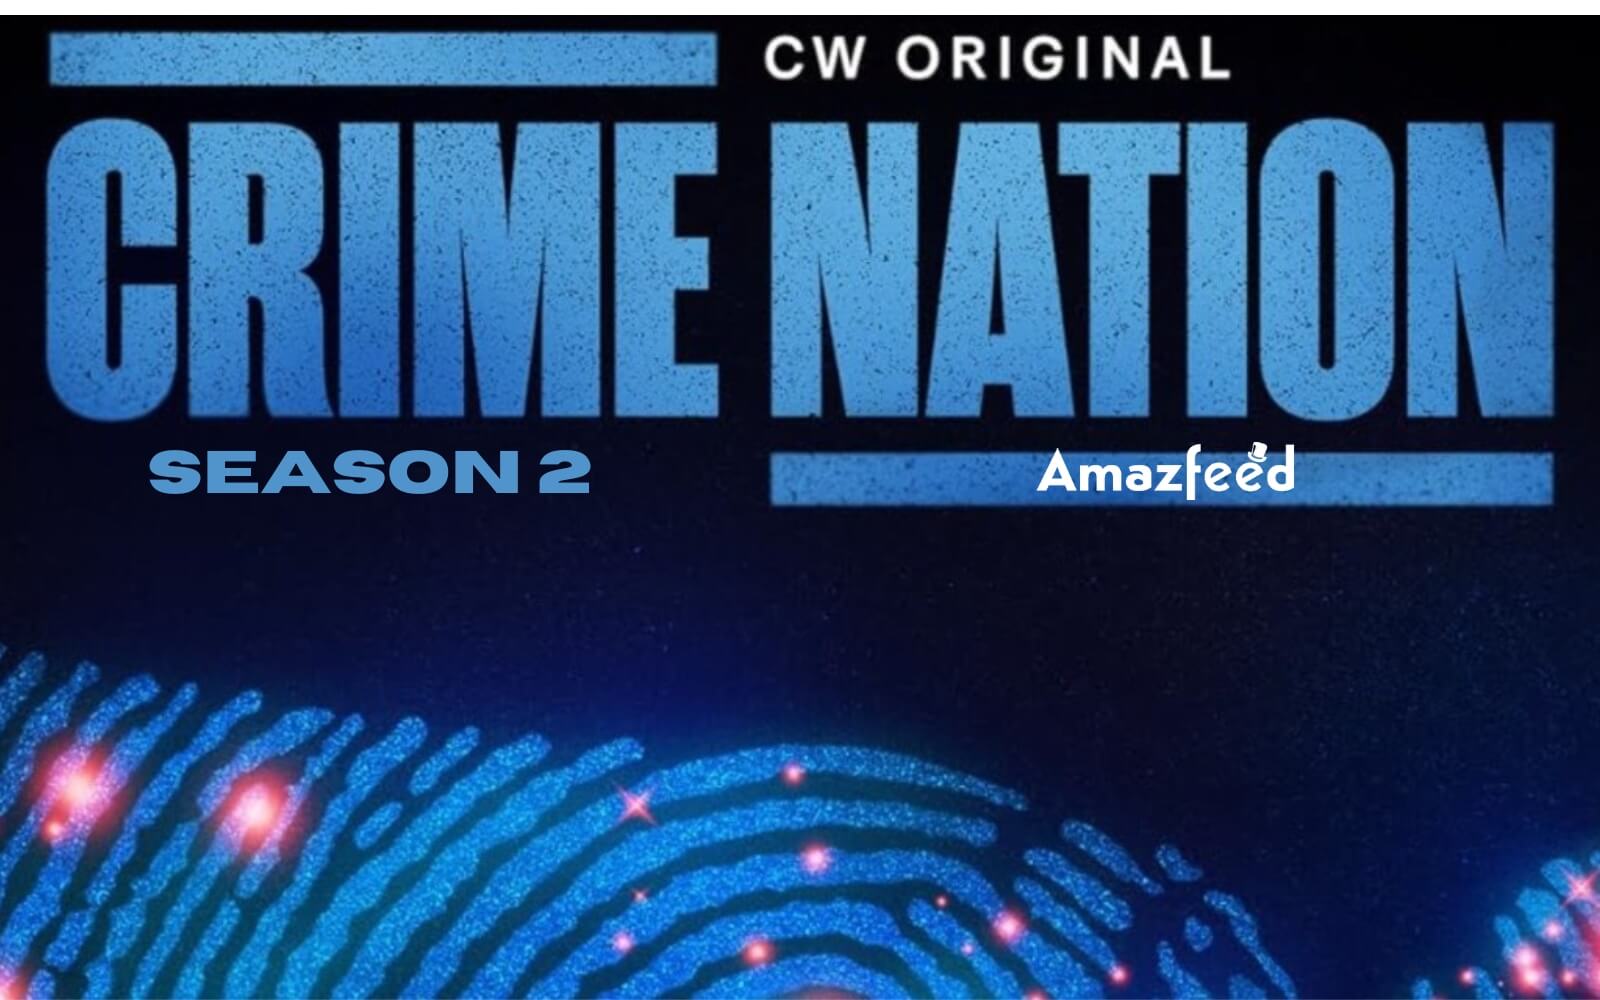 Crime Nation Season 2 release